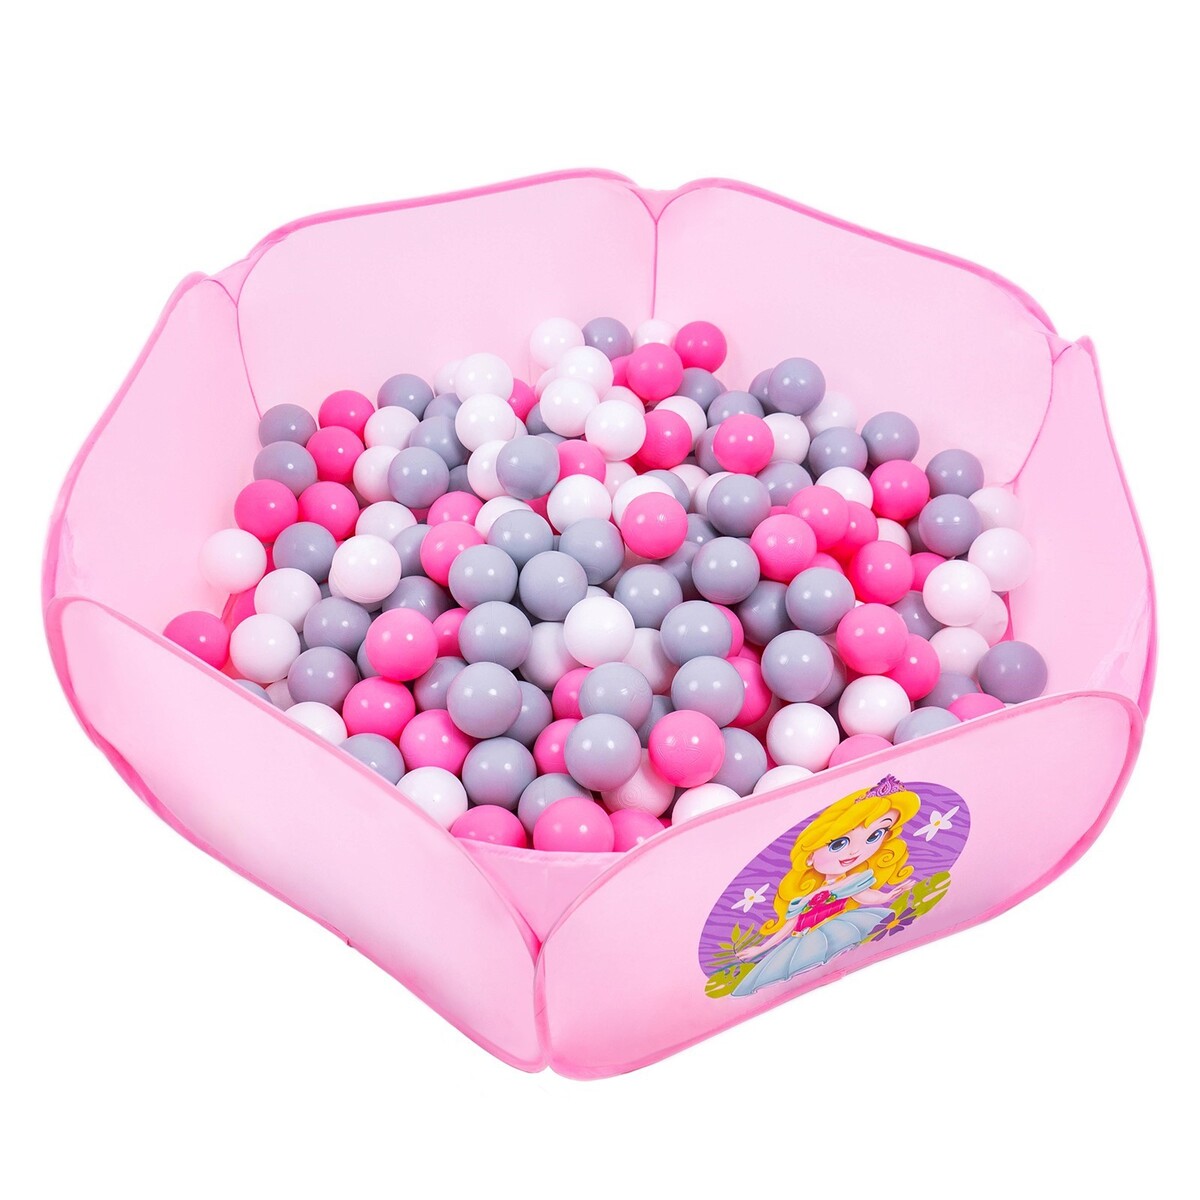 Шарики для сухого бассейна с рисунком, диаметр шара 7,5 см, набор 150 штук, цвет розовый, белый, серый шары для сухого бассейна 50шт 8см